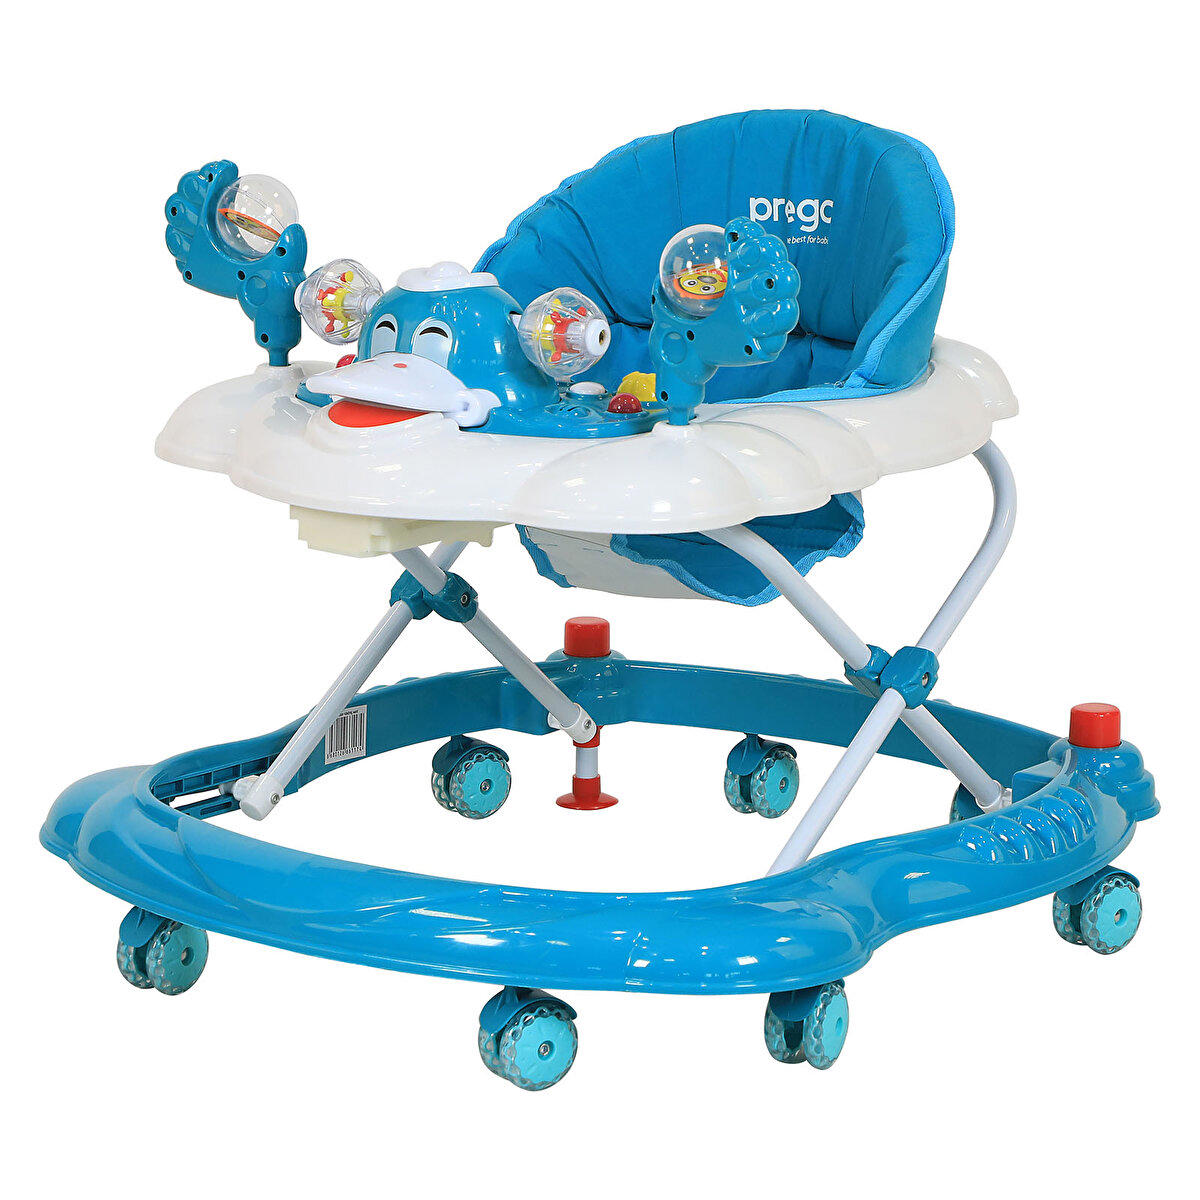 Prego Baby Ördekli 8 Tekerlekli Oyuncaklı Sallanan Örümcek Yürüteç Mavi